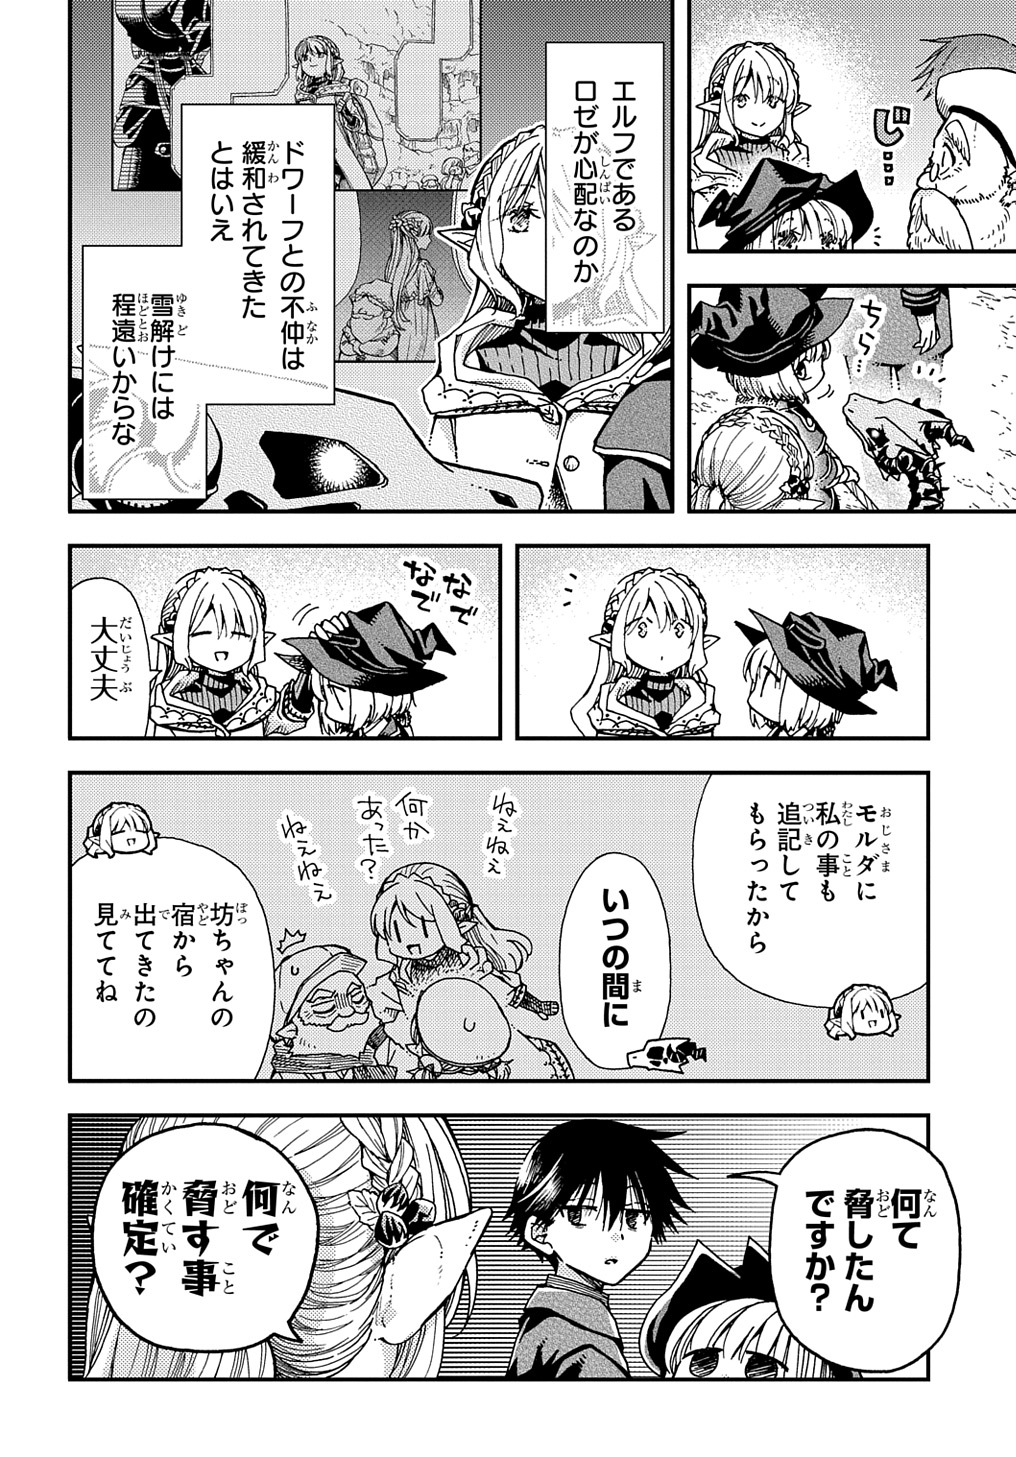 Hone Dragon no Mana Musume - Chapter 29 - Page 2